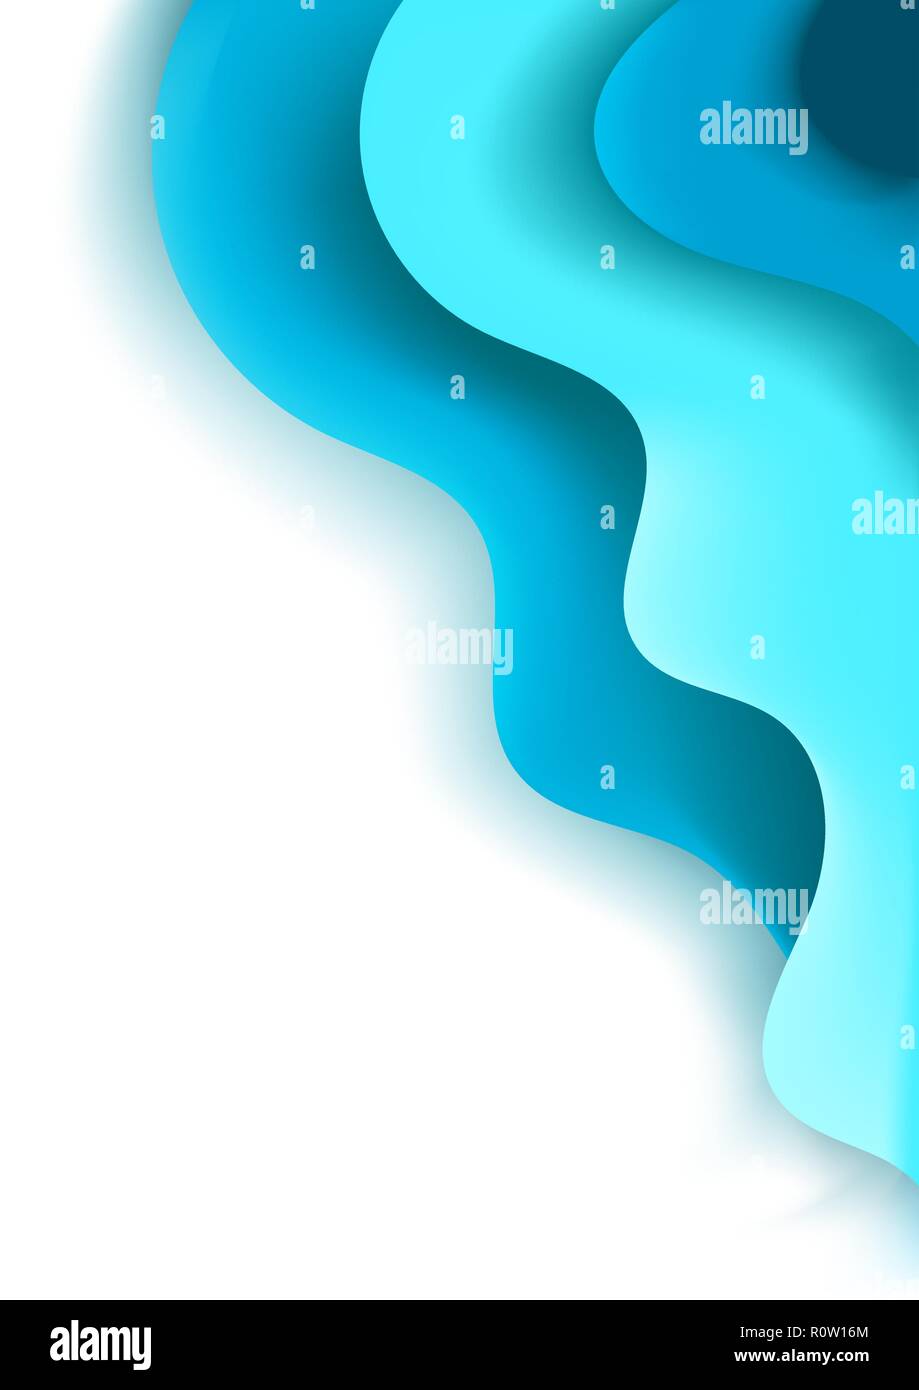 A4 vertical banner avec 3D abstrait avec fond bleu turquoise papier coupé des vagues. Les couleurs de la mer. Vector design layout pour des présentations, des prospectus, des affiches Illustration de Vecteur